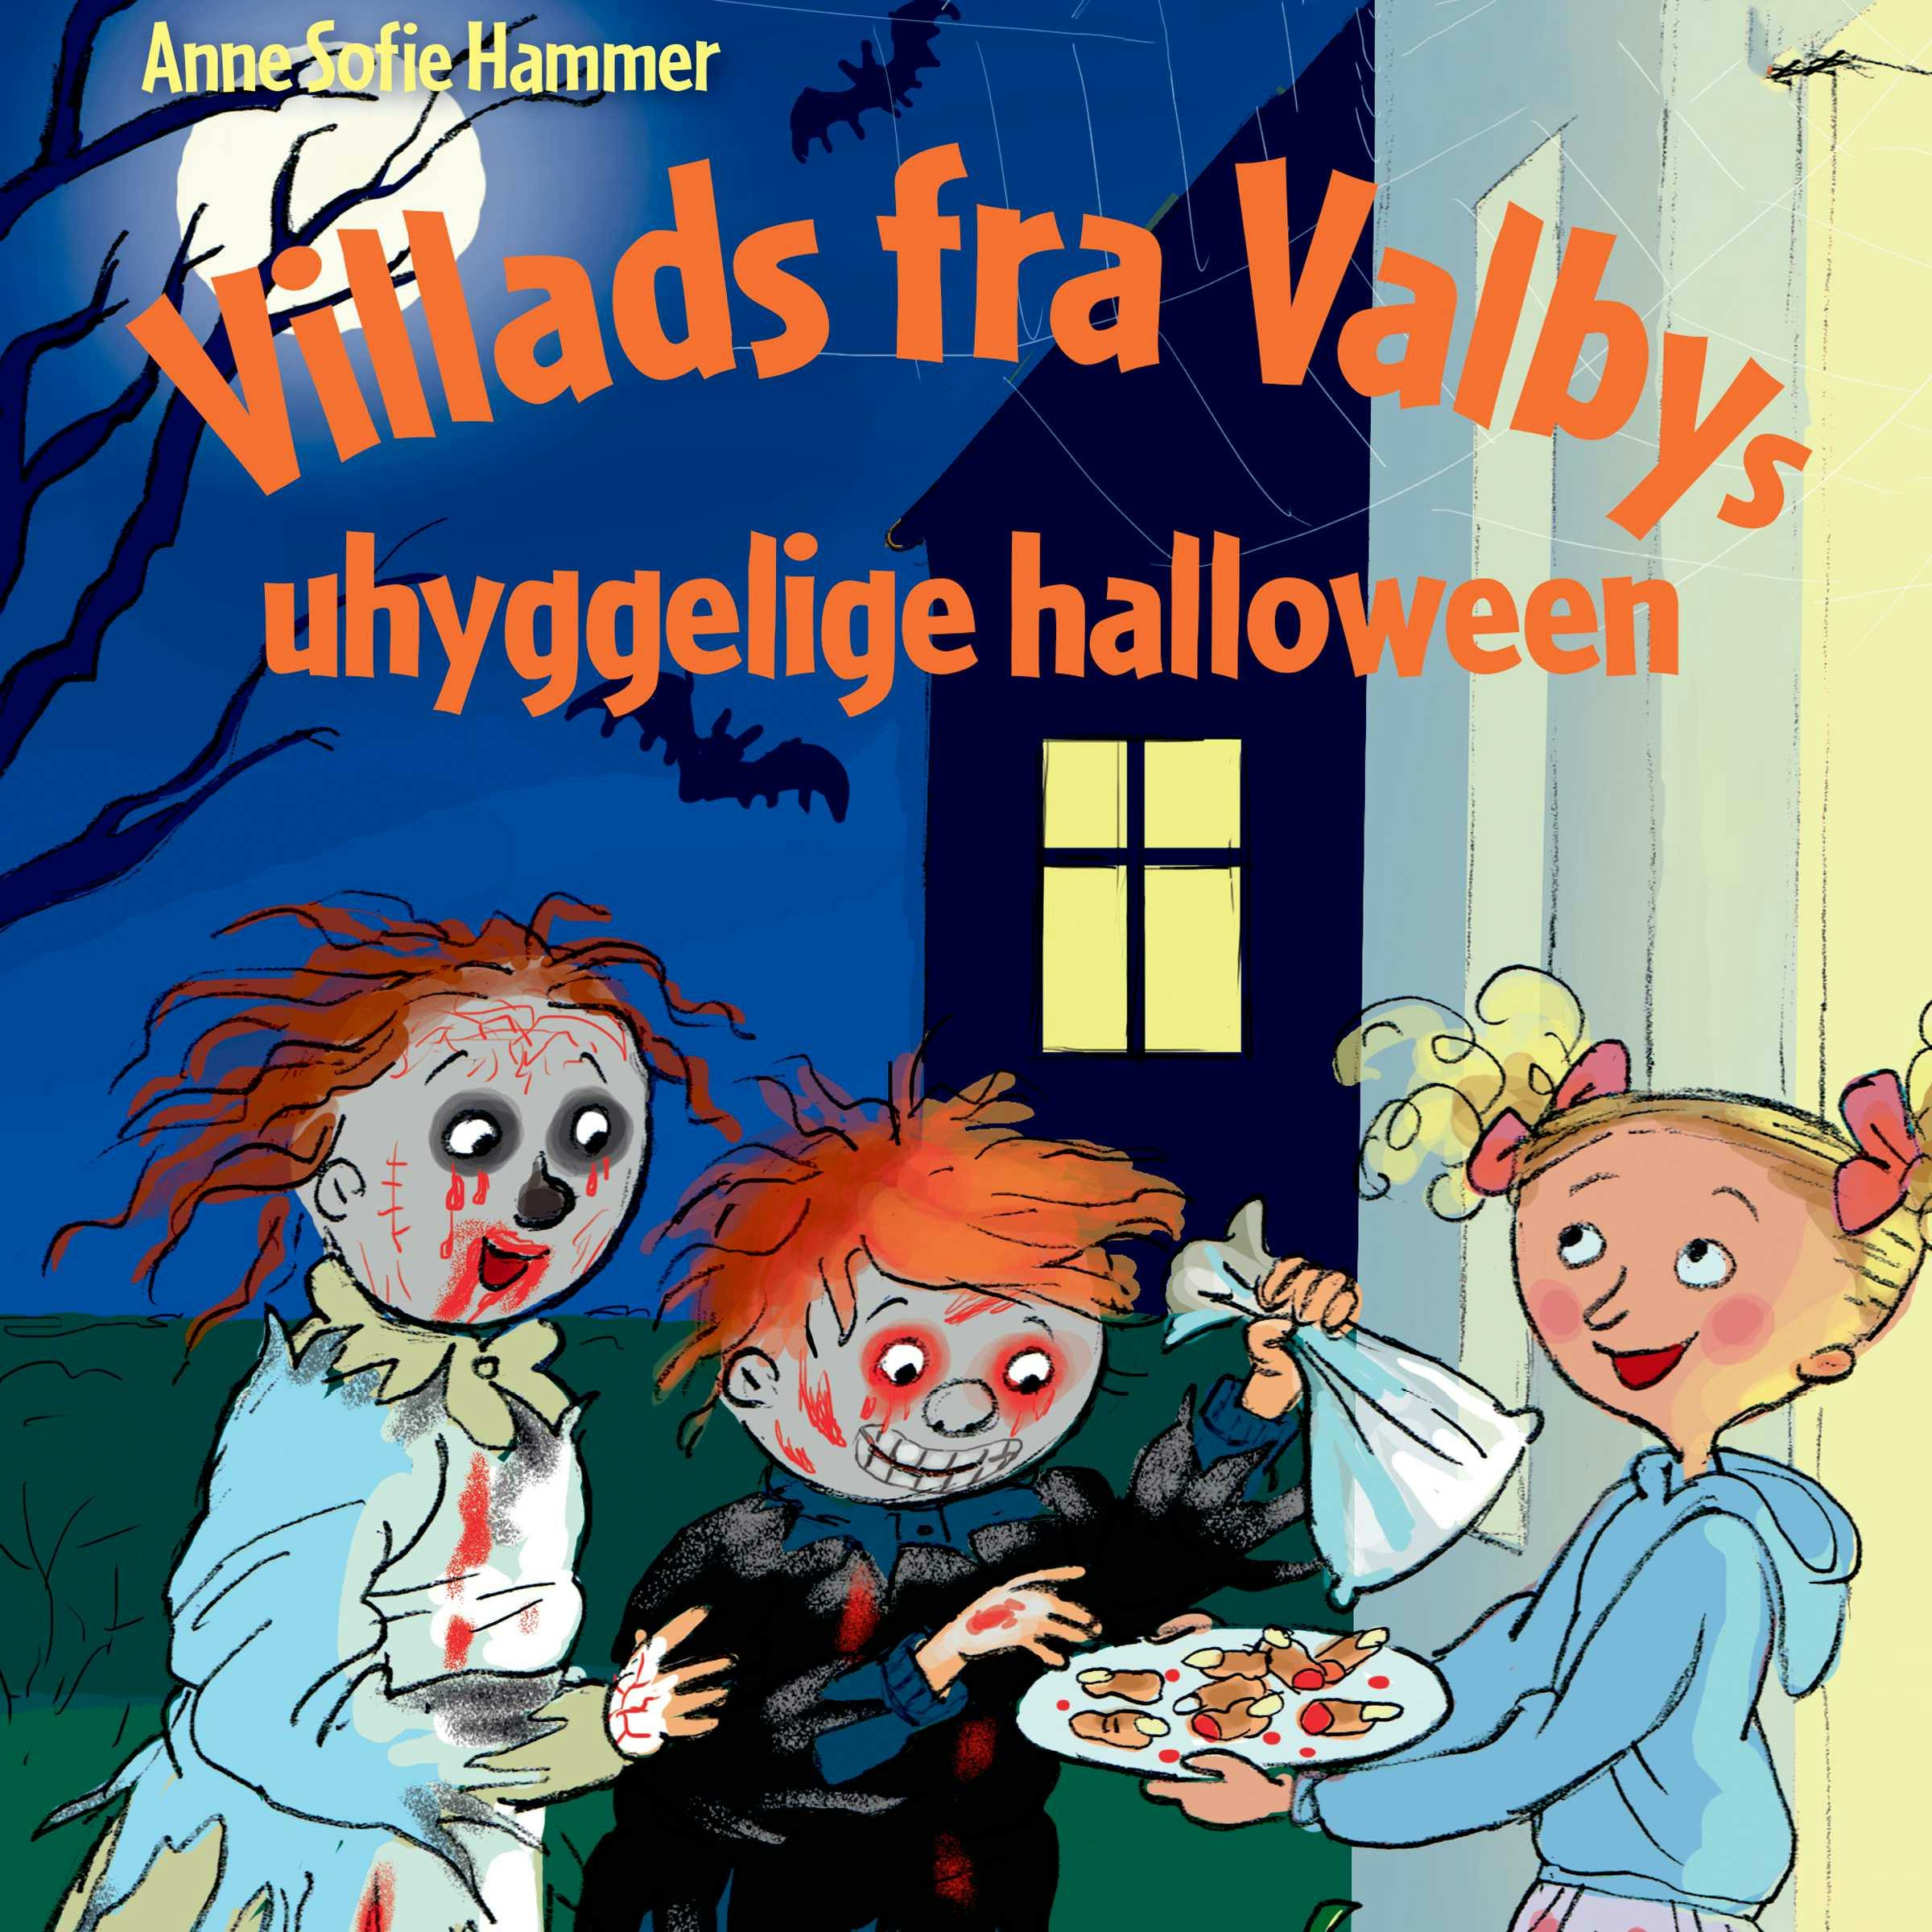 Villads fra Valbys uhyggelige halloween LYT&LÆS - undefined